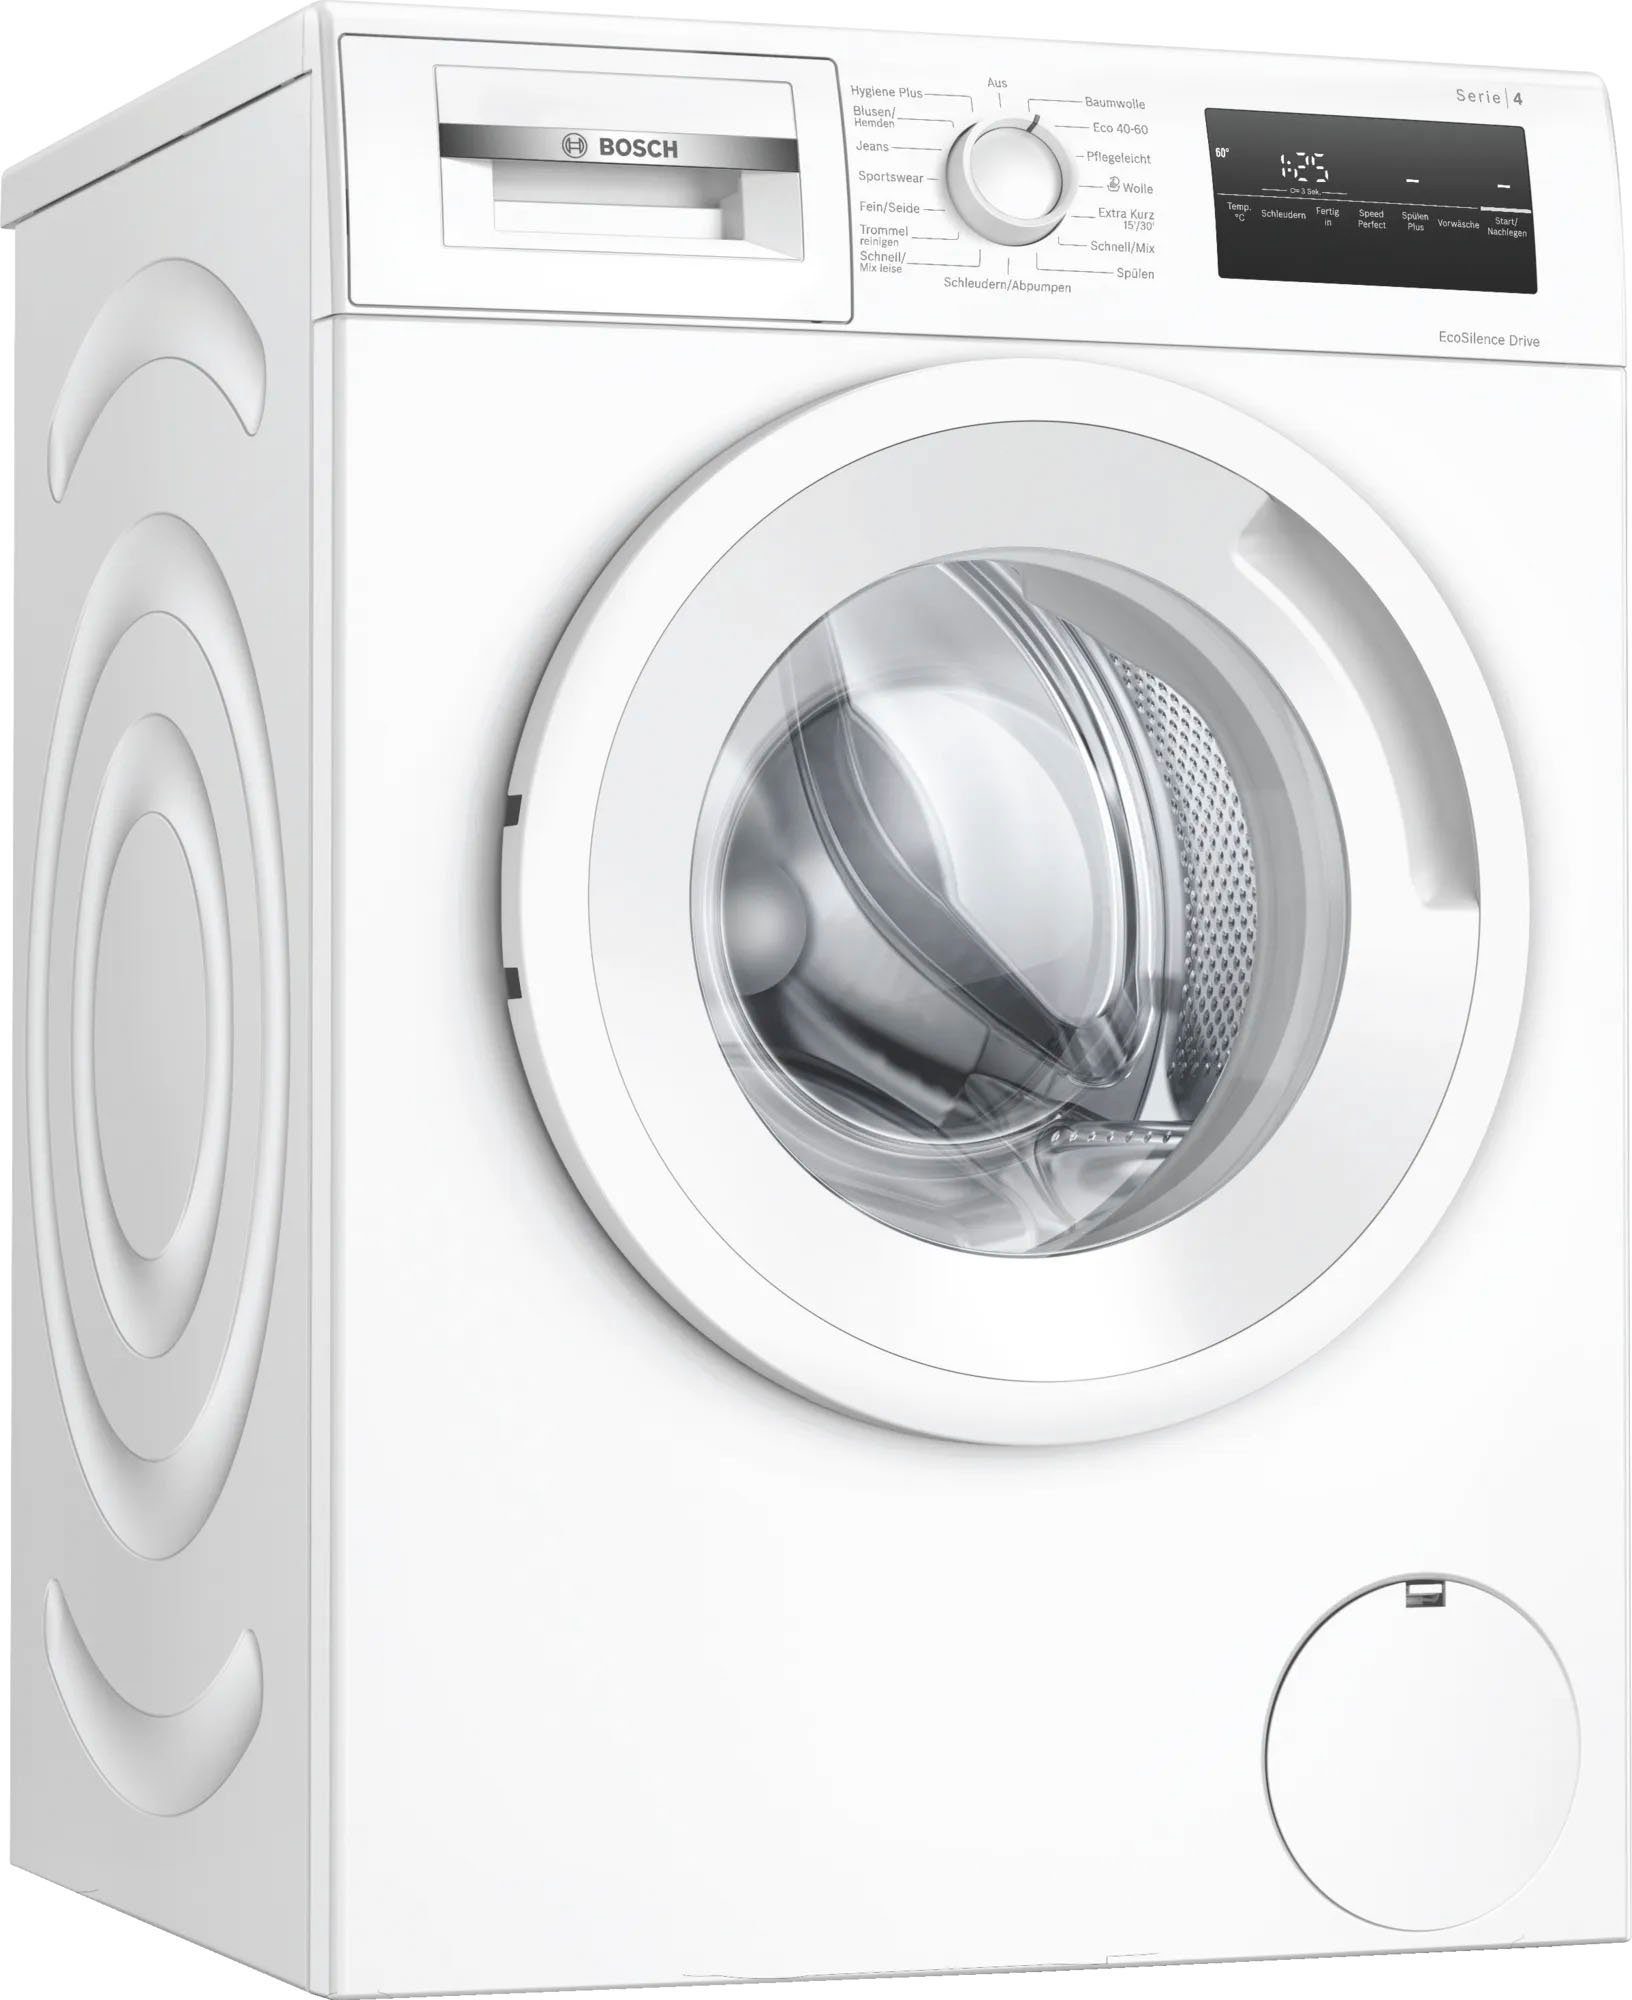 BOSCH Waschmaschine Serie 4 1400 U/min 7 WAN282A3, kg